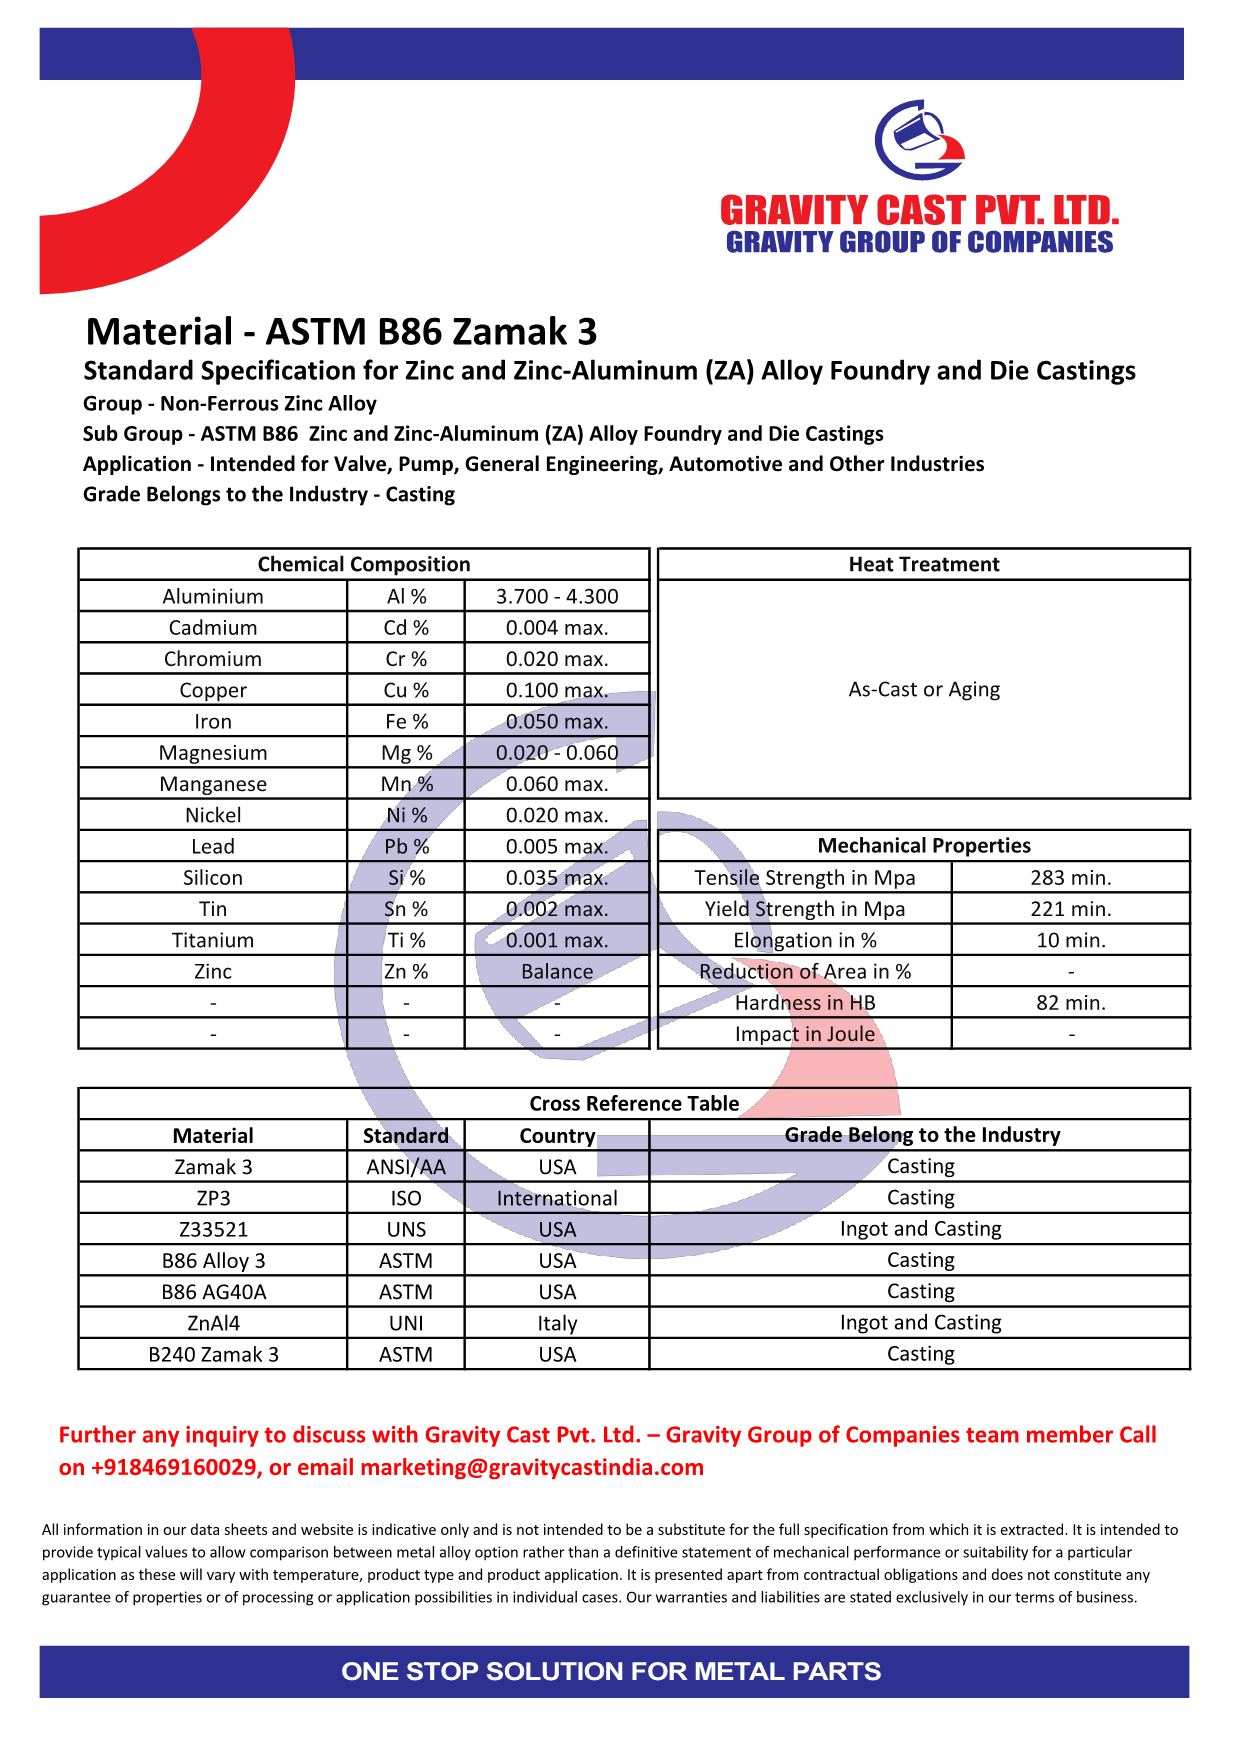 ASTM B86 Zamak 3.pdf